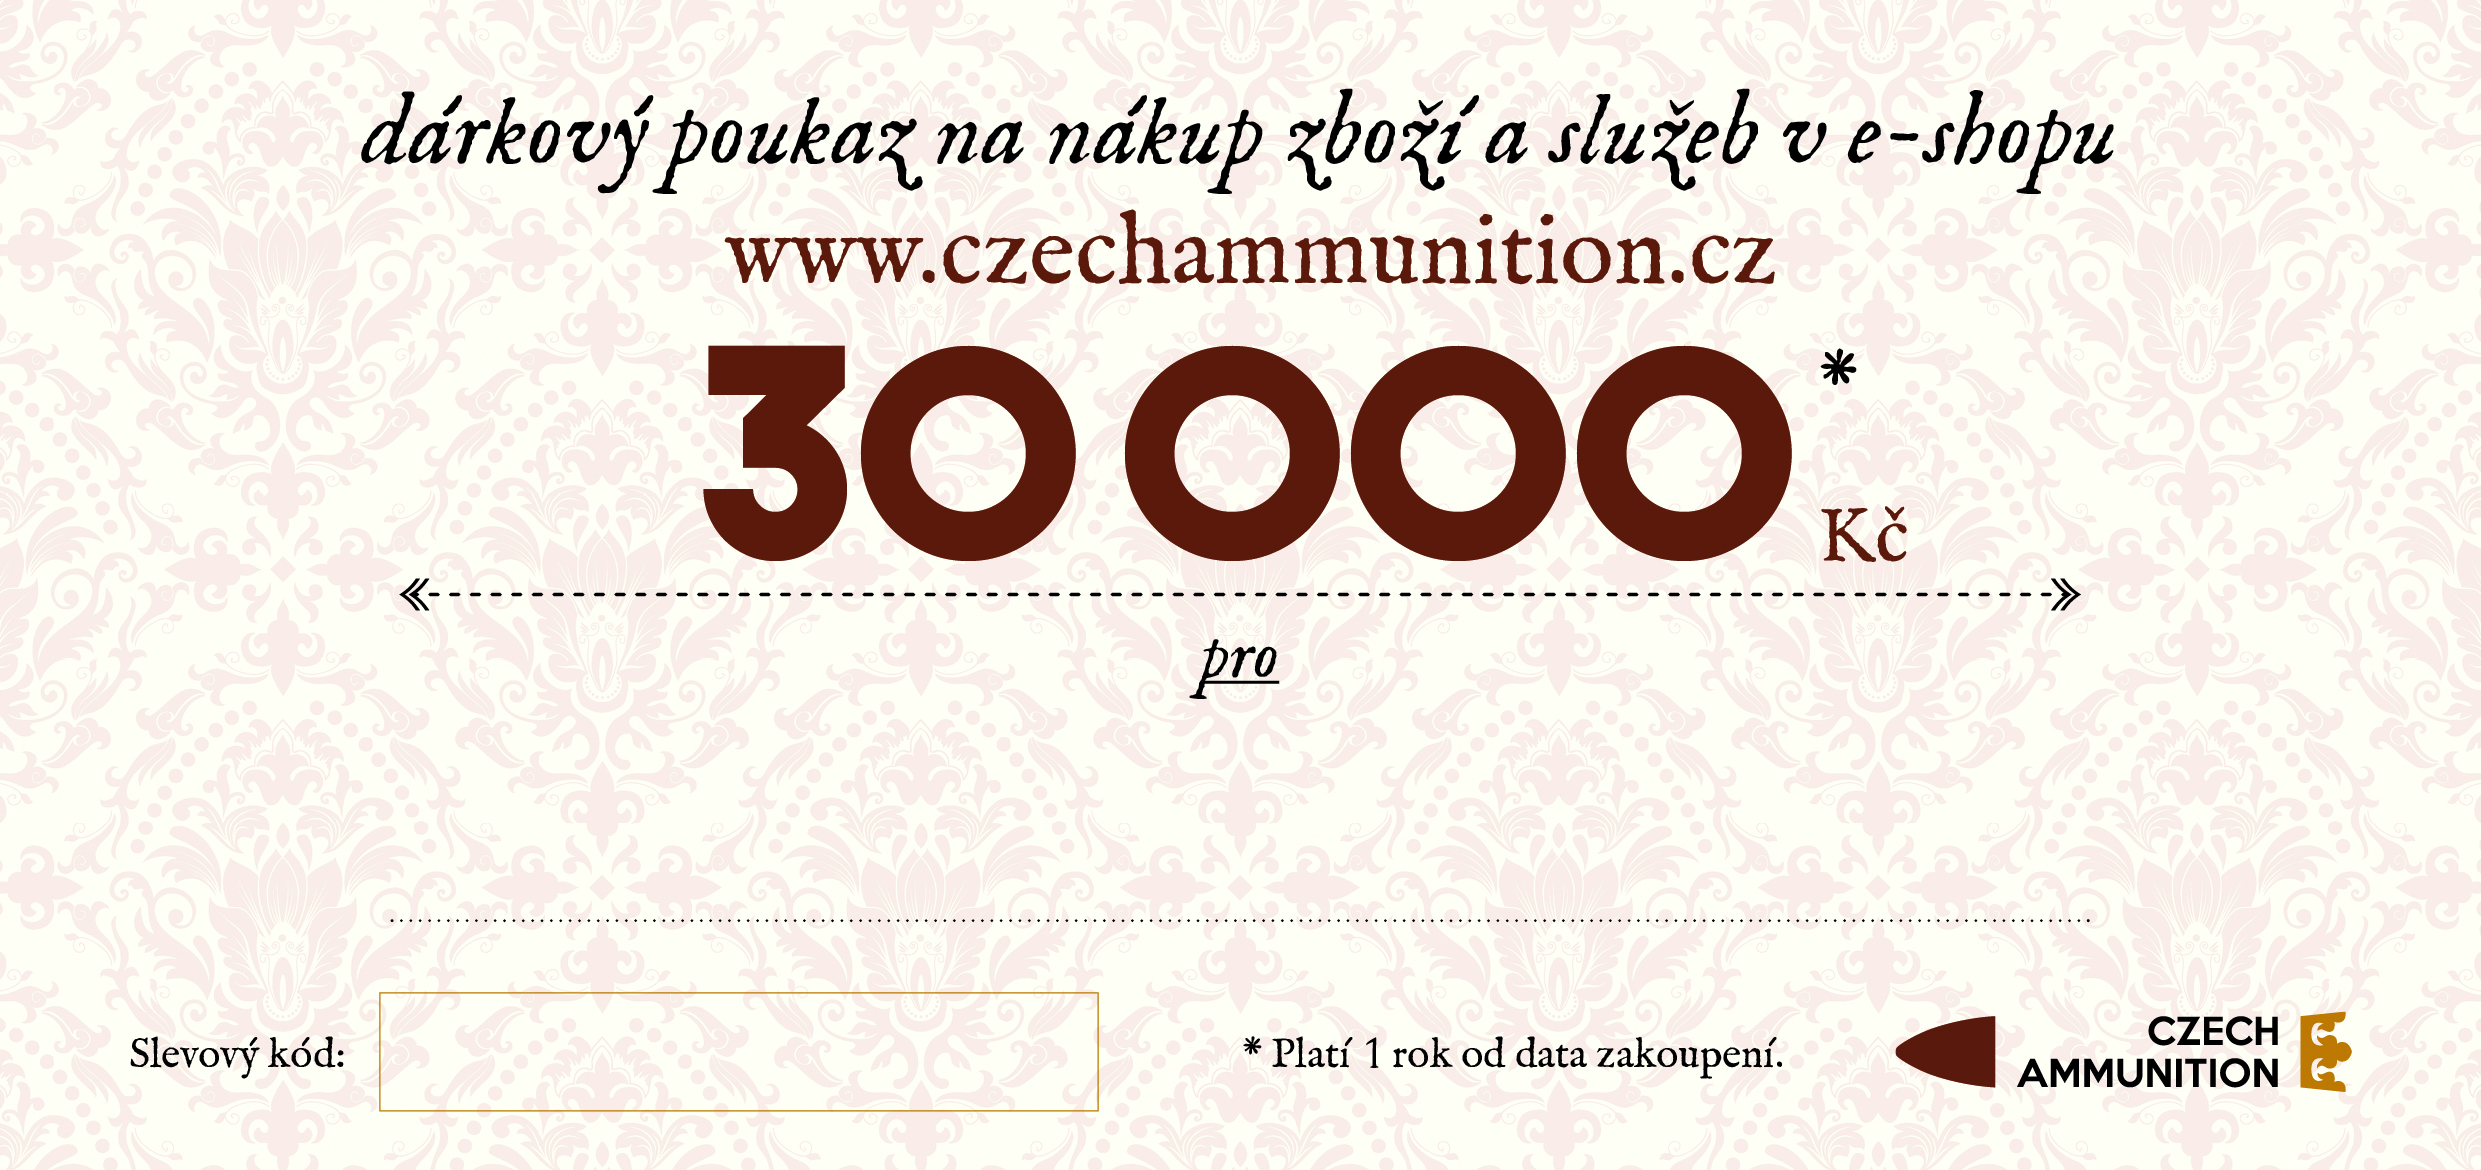 Dárkový poukaz na nákup v e-shopu www.czechammunition.cz v hodnotě 30.000 Kč